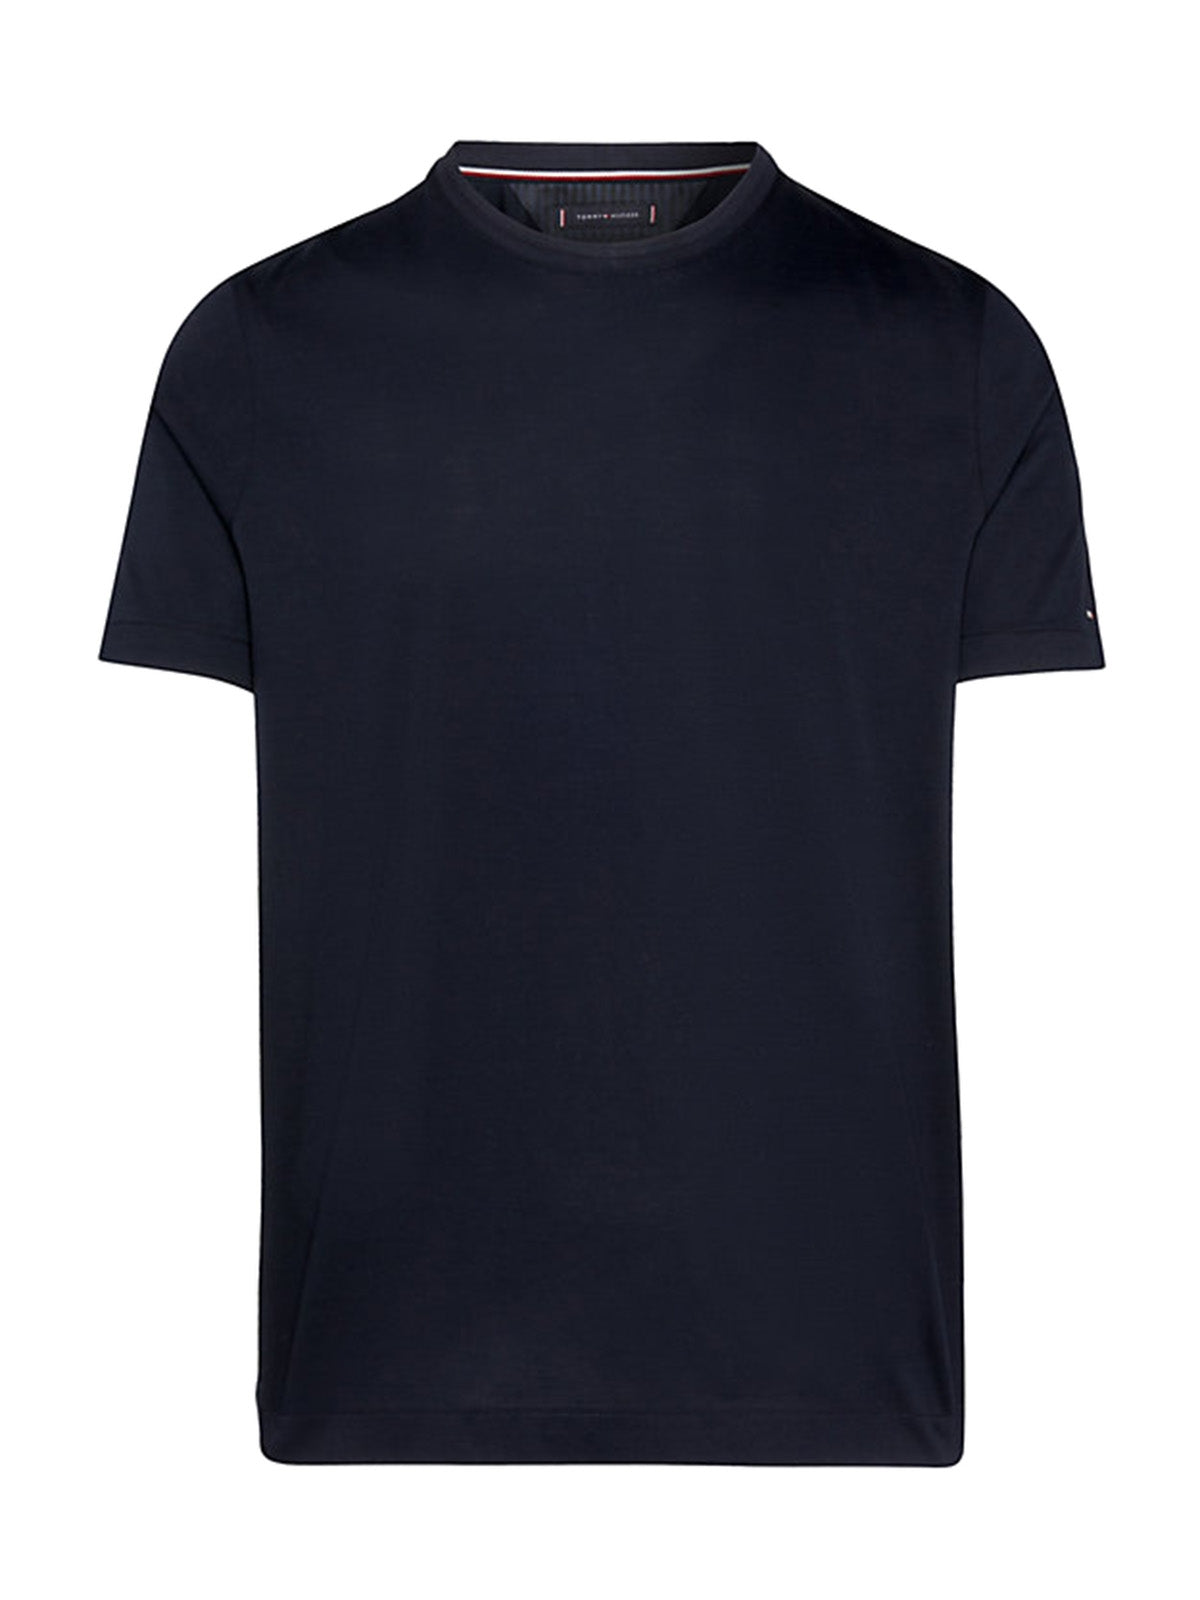 T-shirt Uomo Tommy Hilfiger - T-Shirt In Cotone Mercerizzato Con Bandierina - Blu